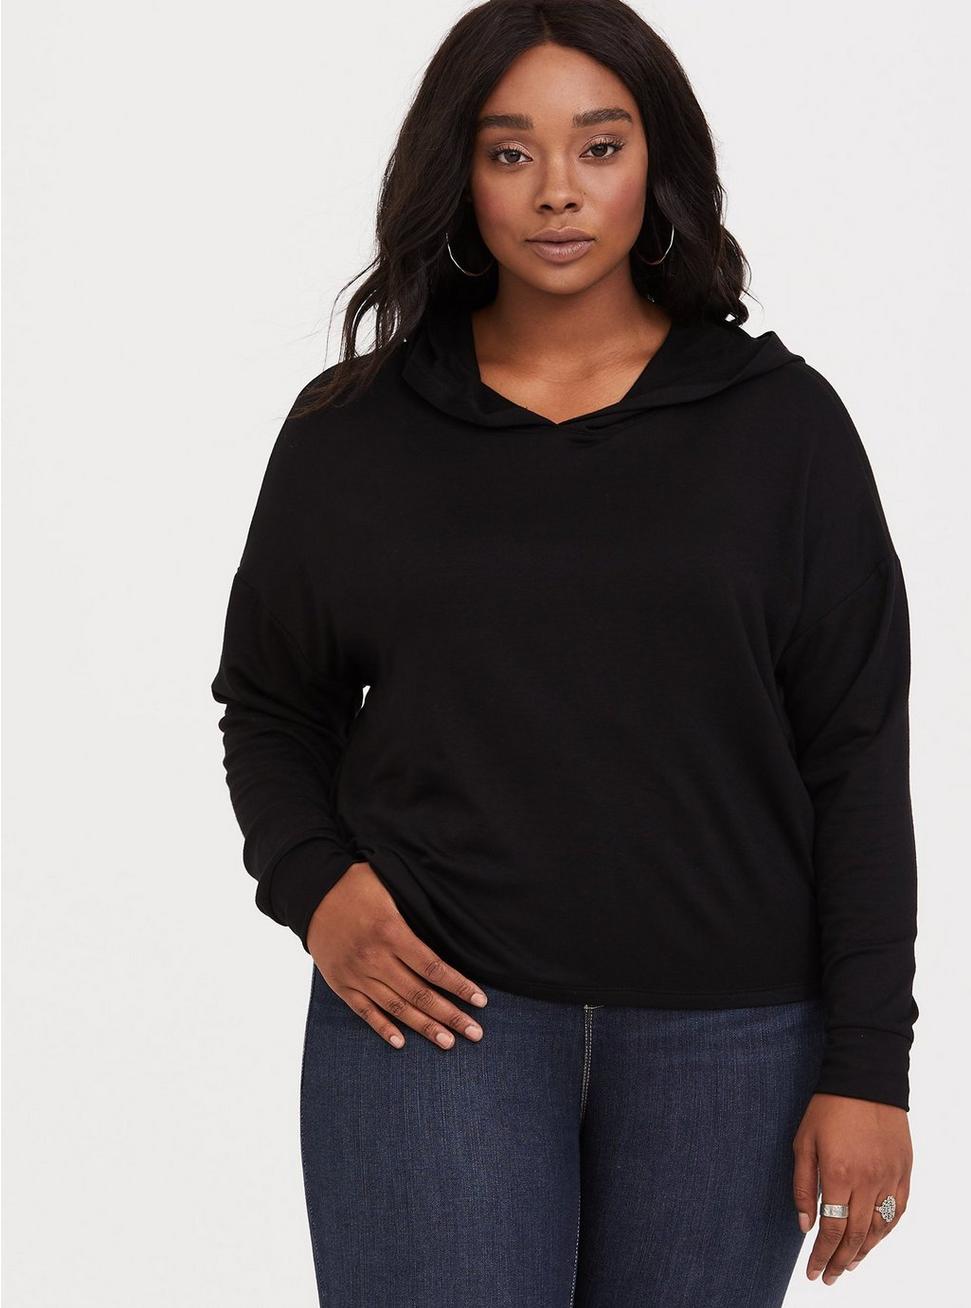 Plus Size - Black Cropped Hoodie Sweatshirt - Torrid